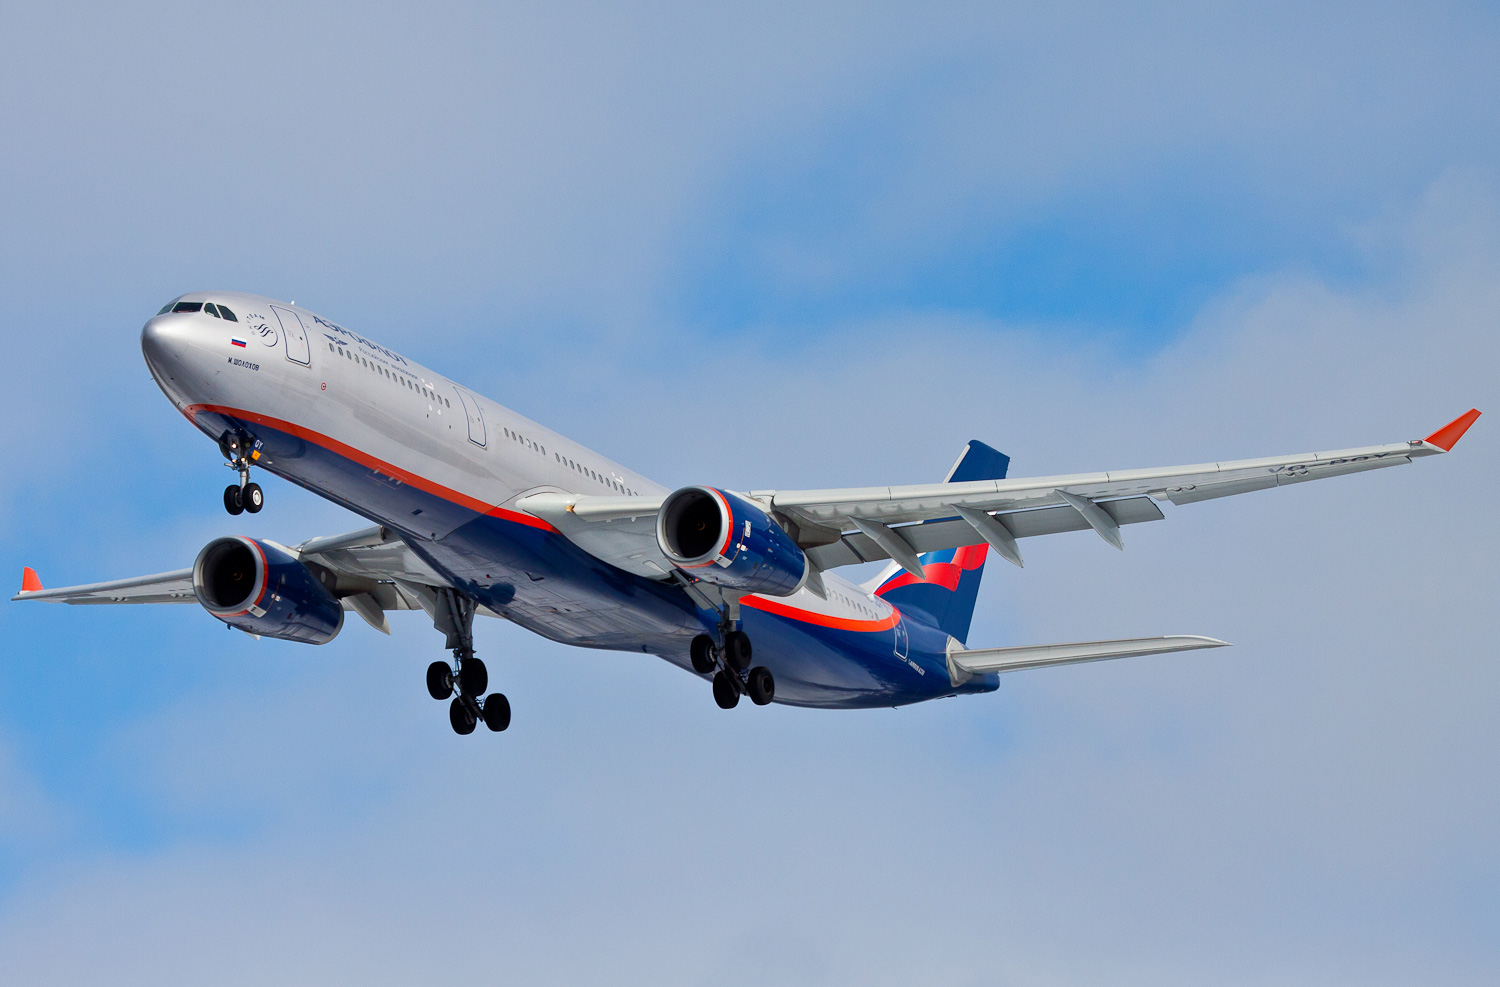 Авиакомпания аэрофлот (aeroflot) — авиакомпании и авиалинии россии и мира